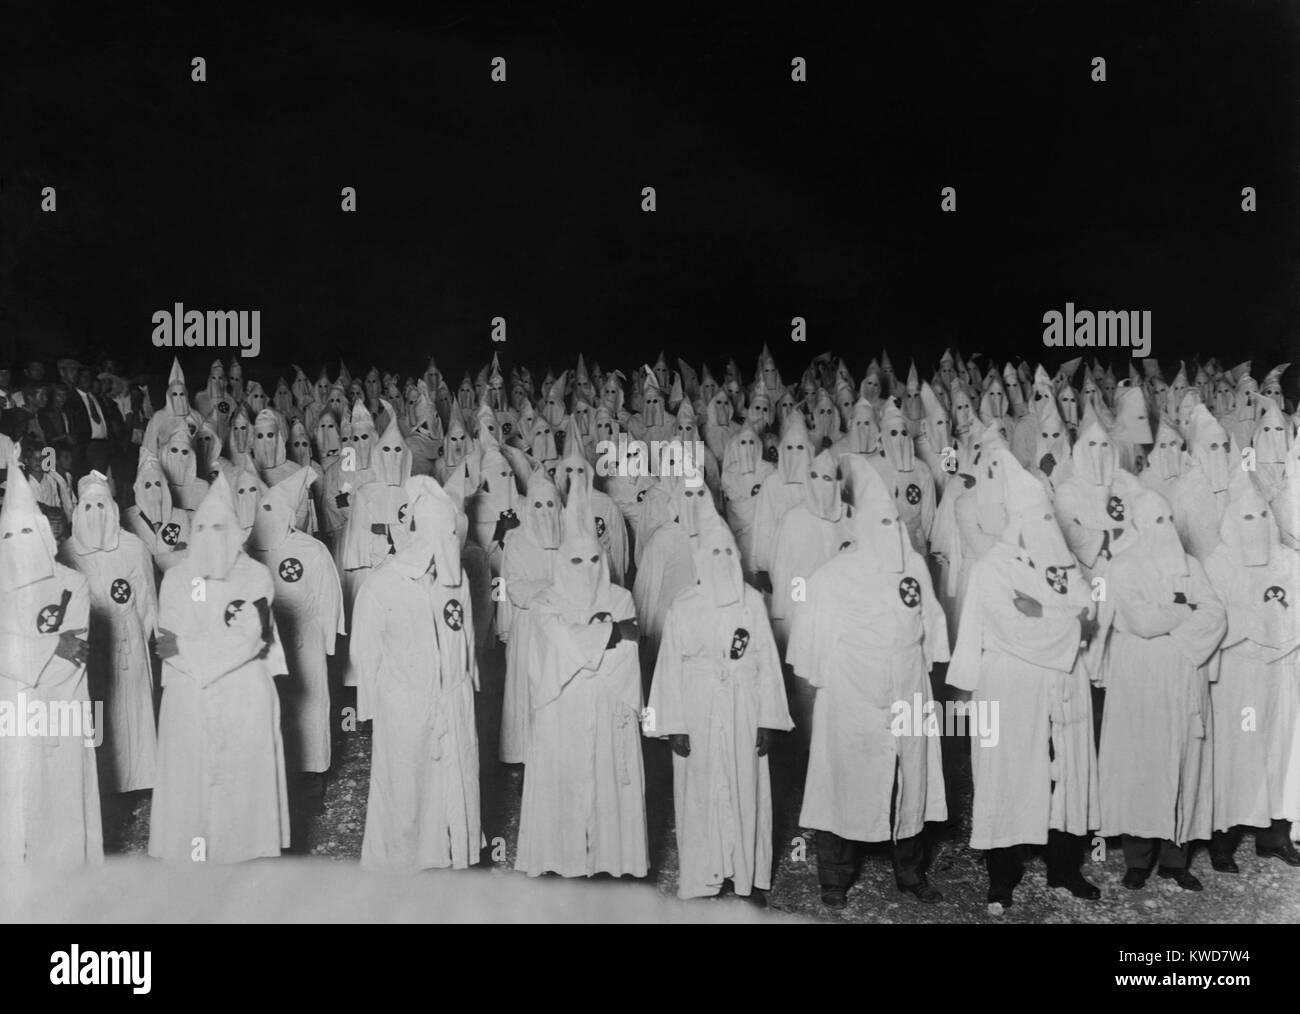 Nächtliche Zusammenkunft von bekleidet und mit kapuze Ku Klux Klan Männer in 1921-1922. Foto von nationalen Foto- und war wahrscheinlich innerhalb von 100 Meilen von Washington, D.C. (BSLOC 2015 16 172) Stockfoto